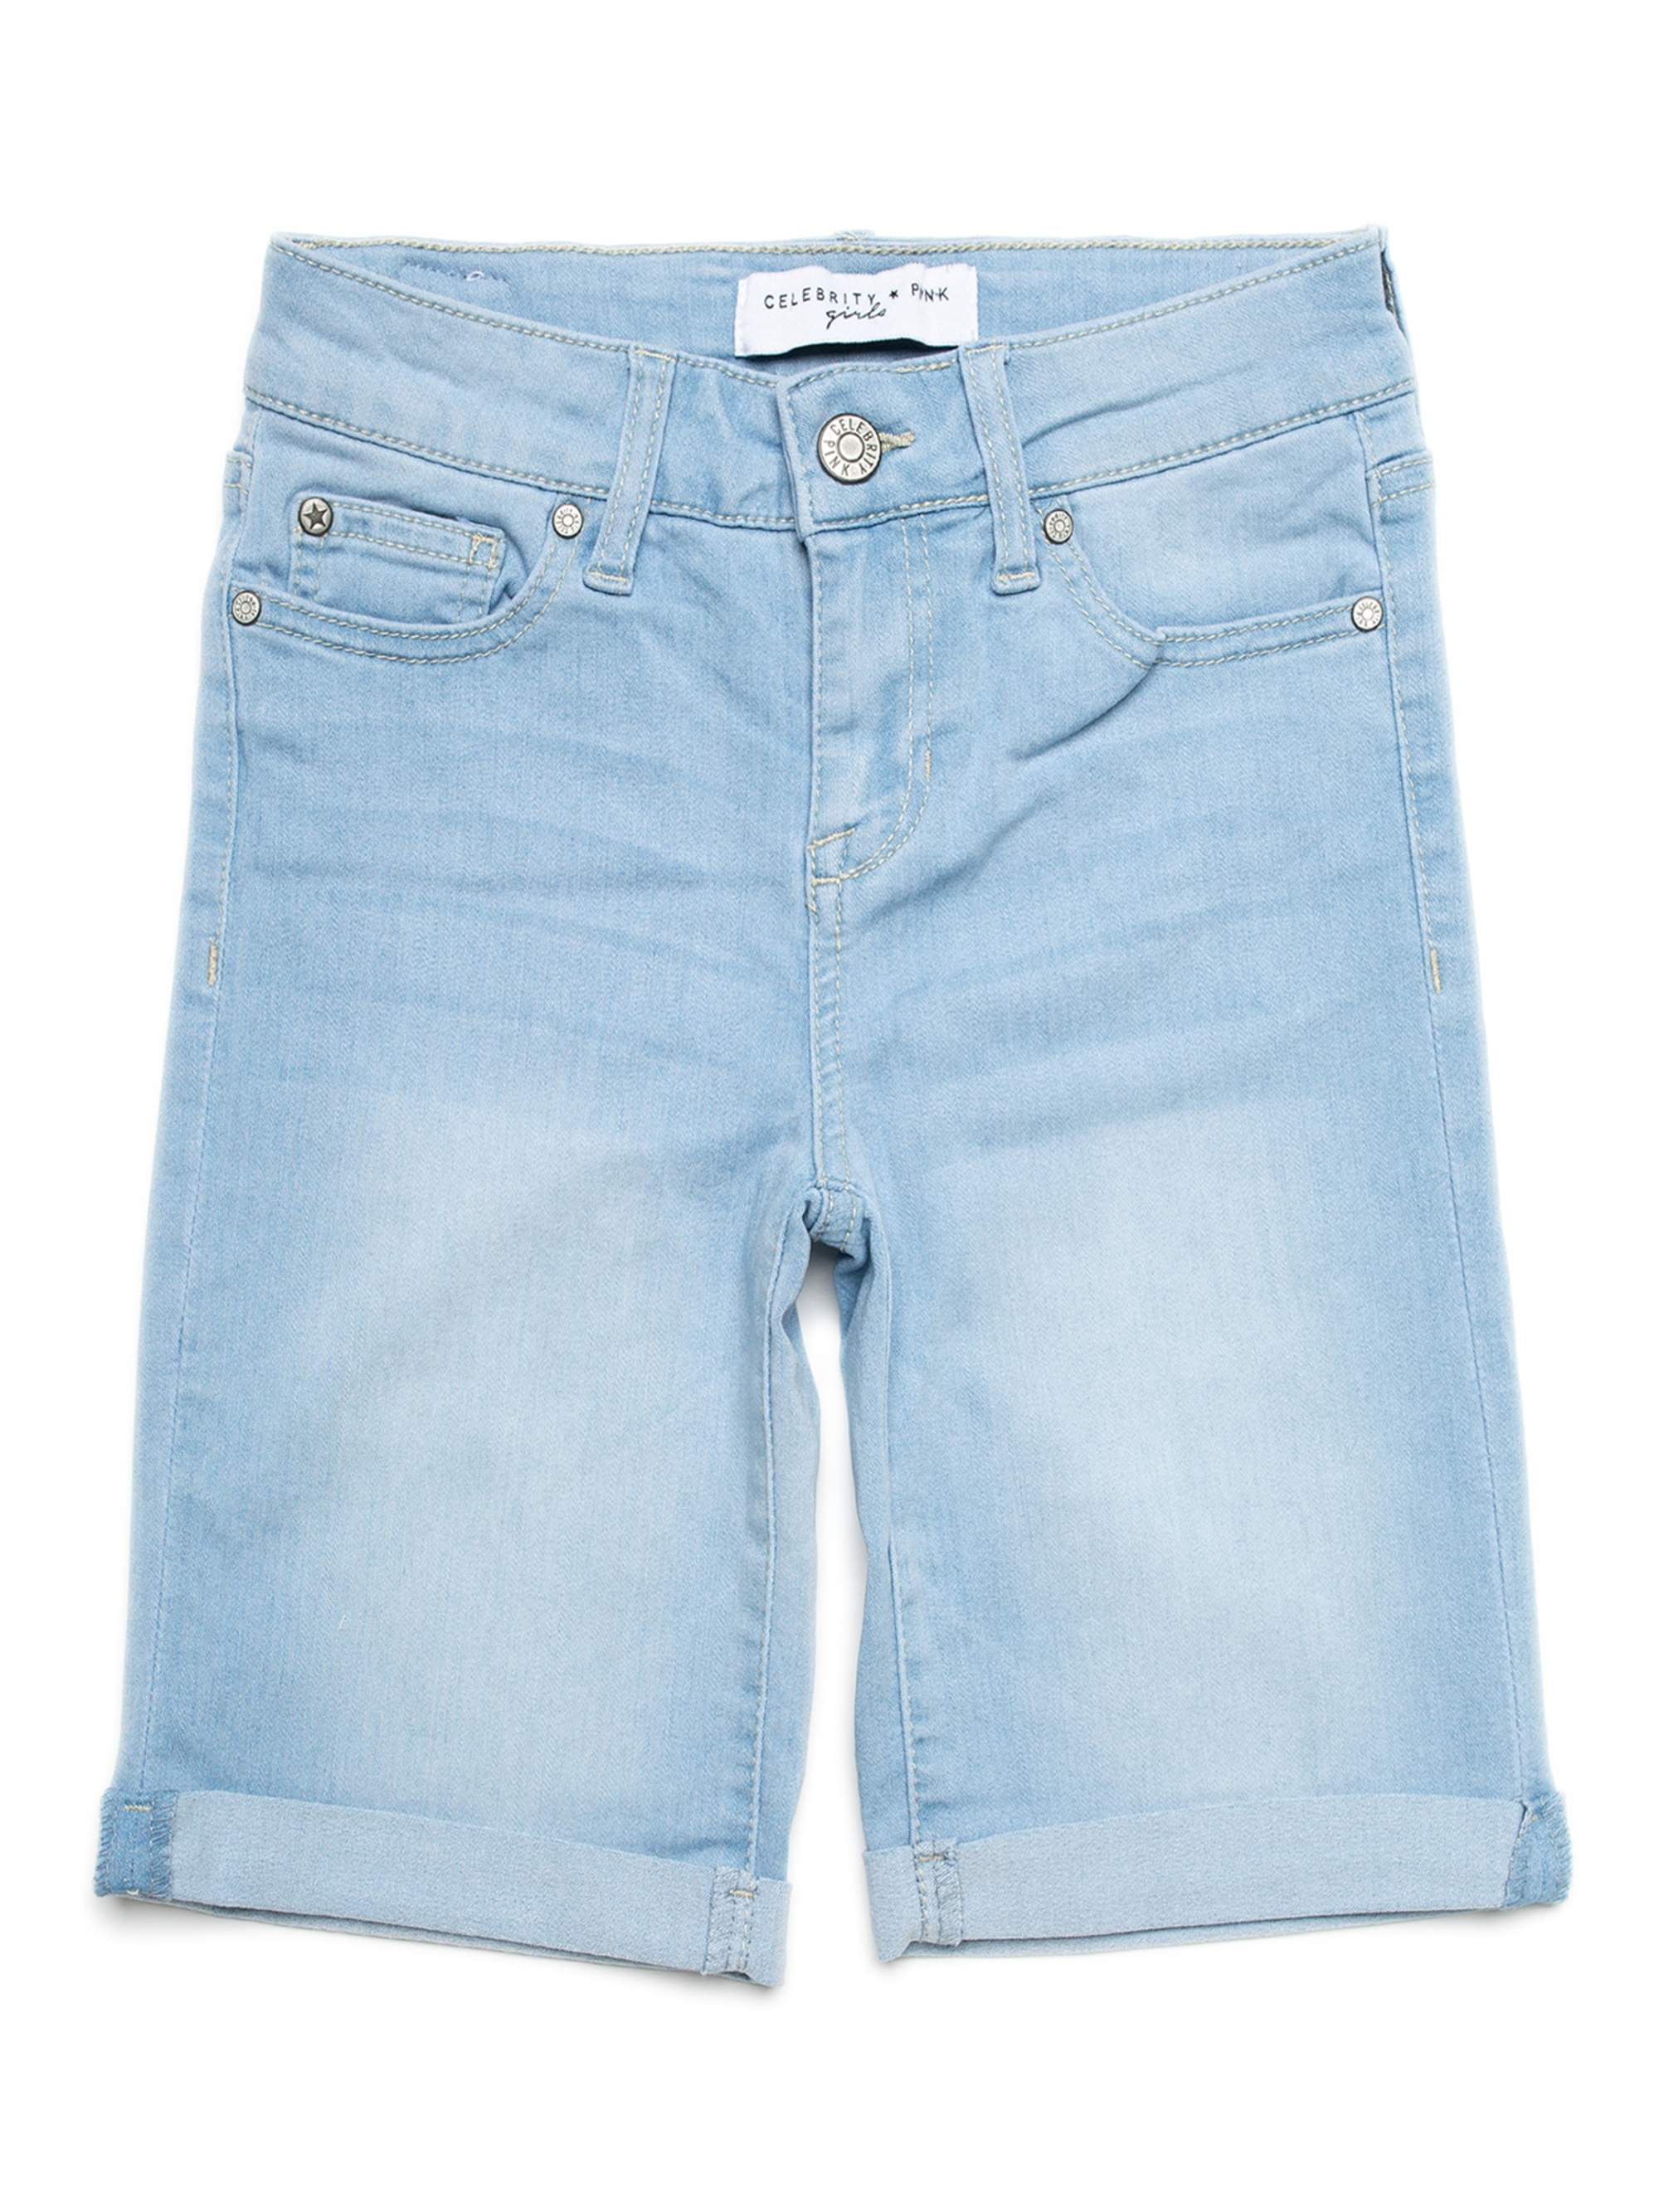 Buy > girls bermuda shorts > in stock